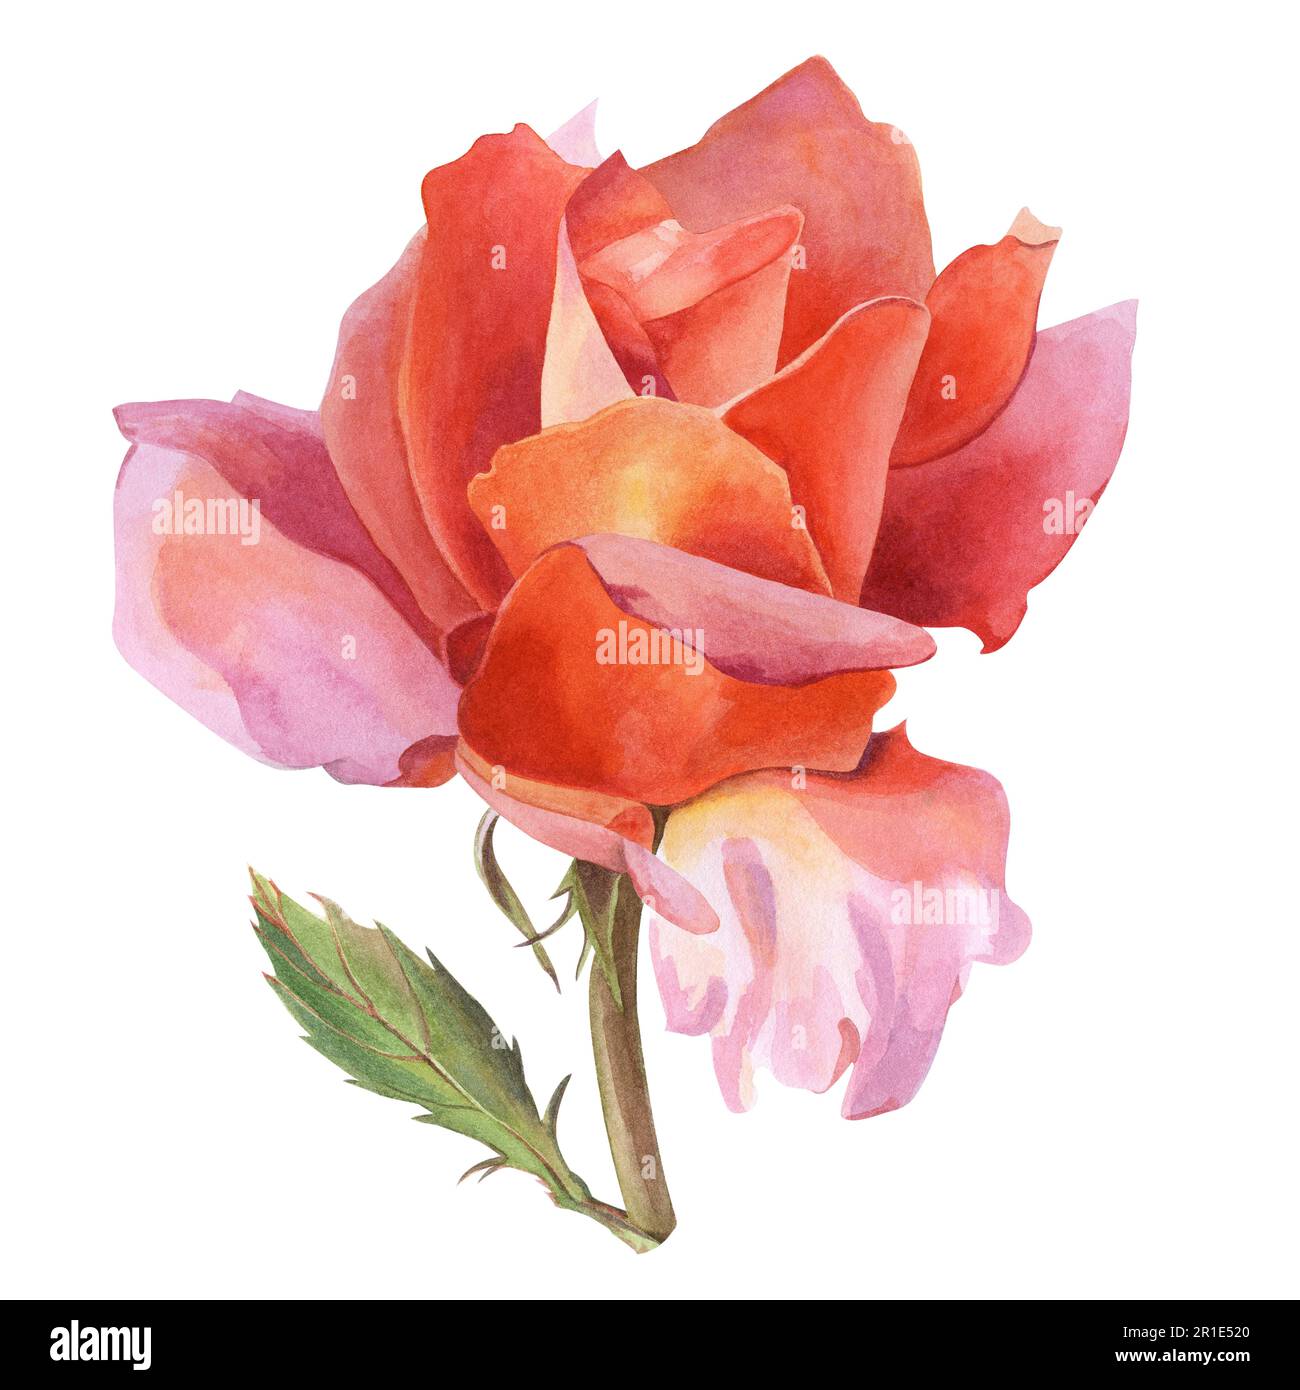 Une fleur rose avec des pétales orange-rose sur une branche avec une feuille. Illustration aquarelle, dessinée à la main. Pour la conception d'invitations de mariage, cartes postales, etheetheets Banque D'Images